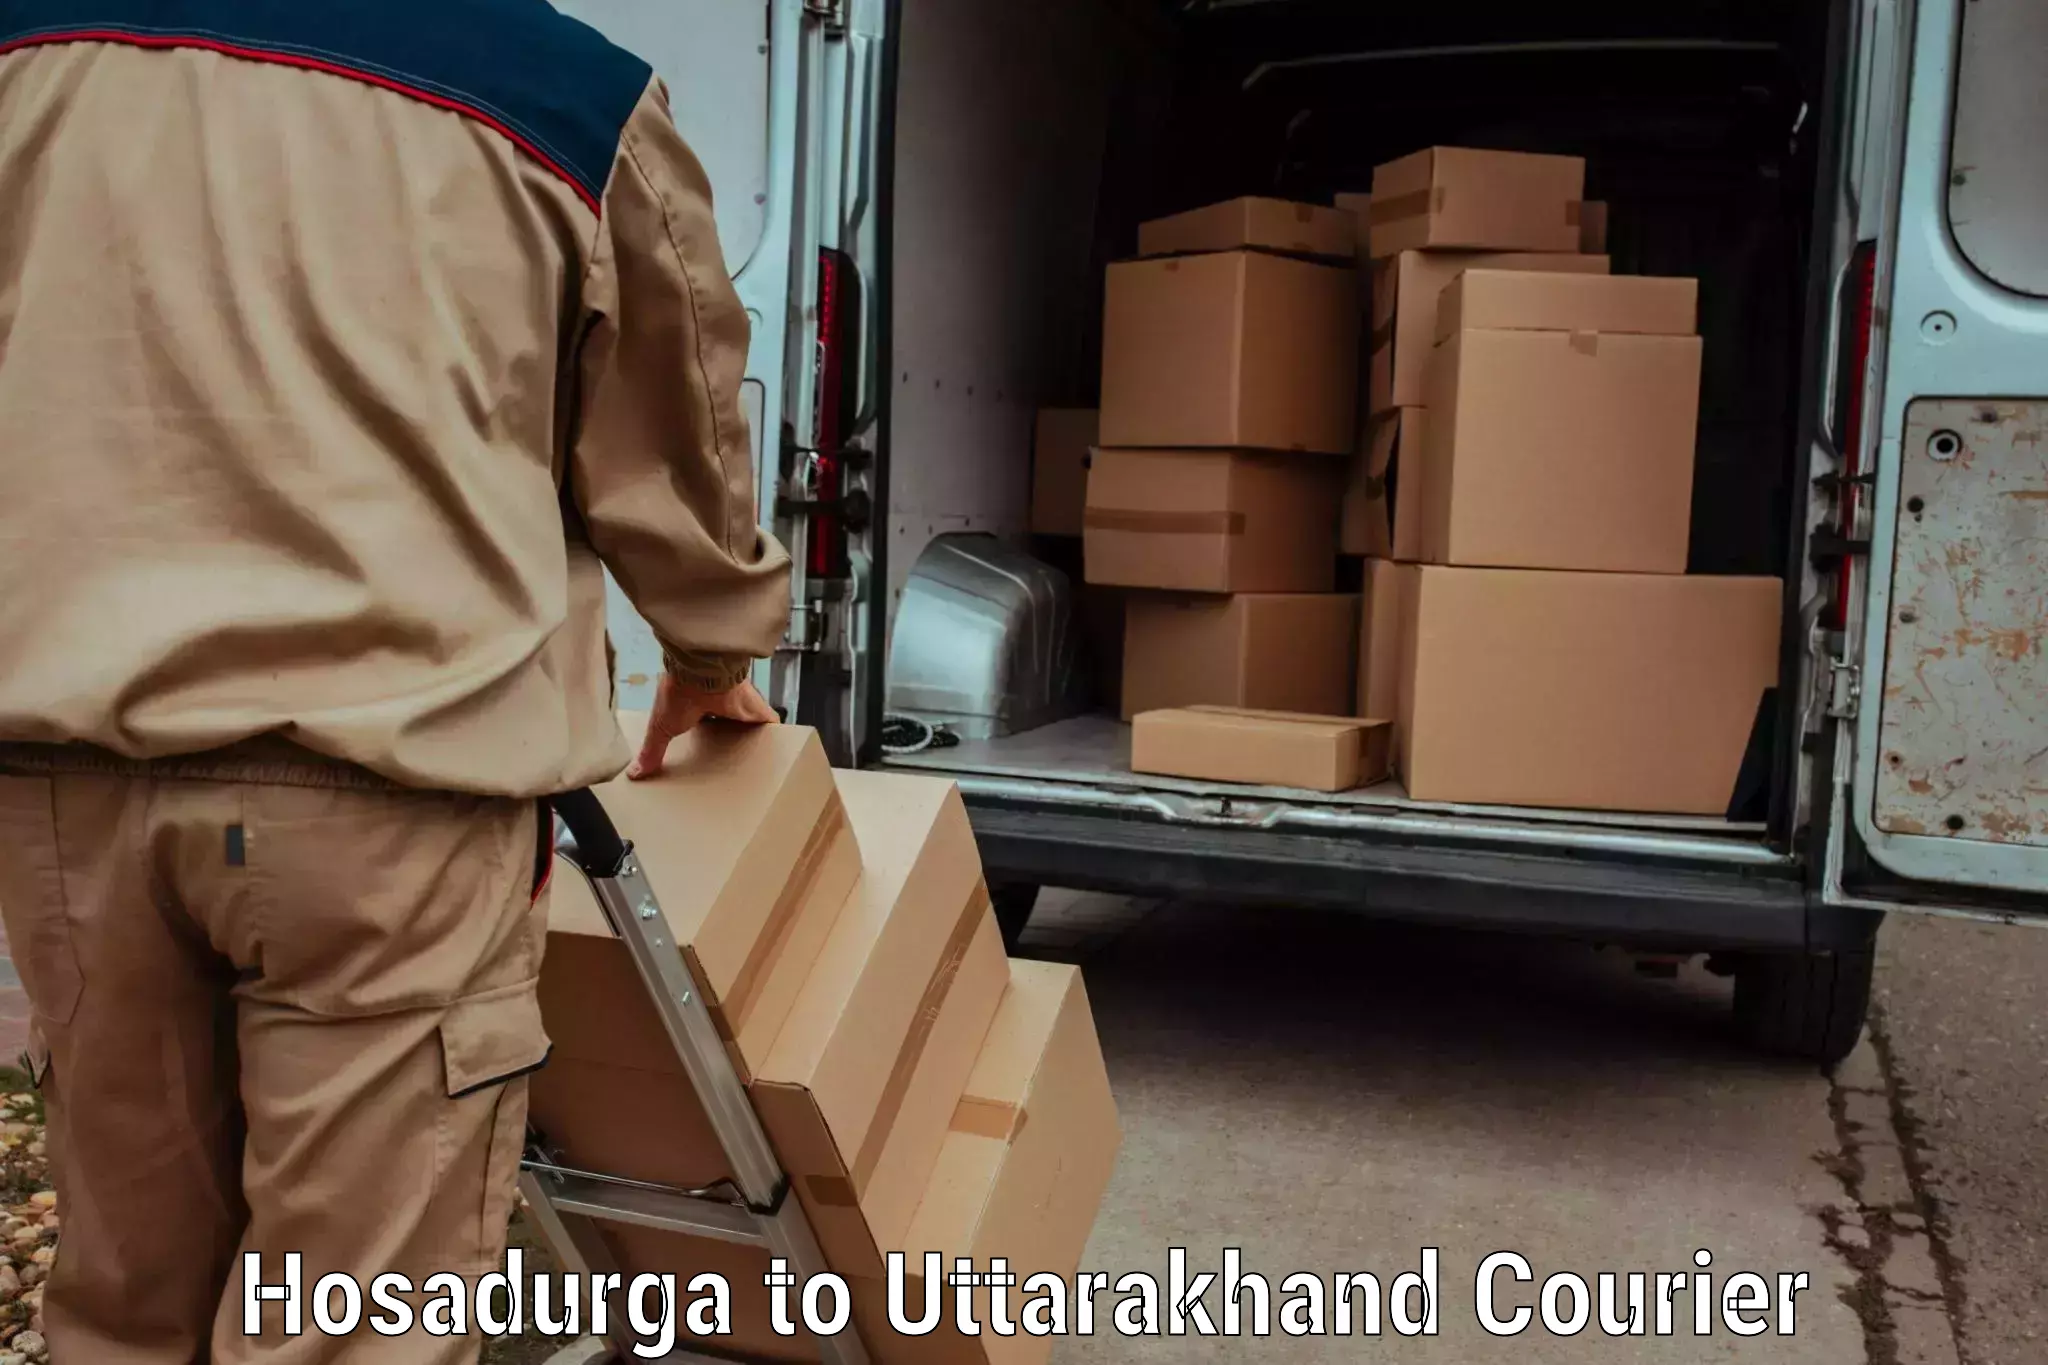 Smart parcel tracking Hosadurga to Doiwala